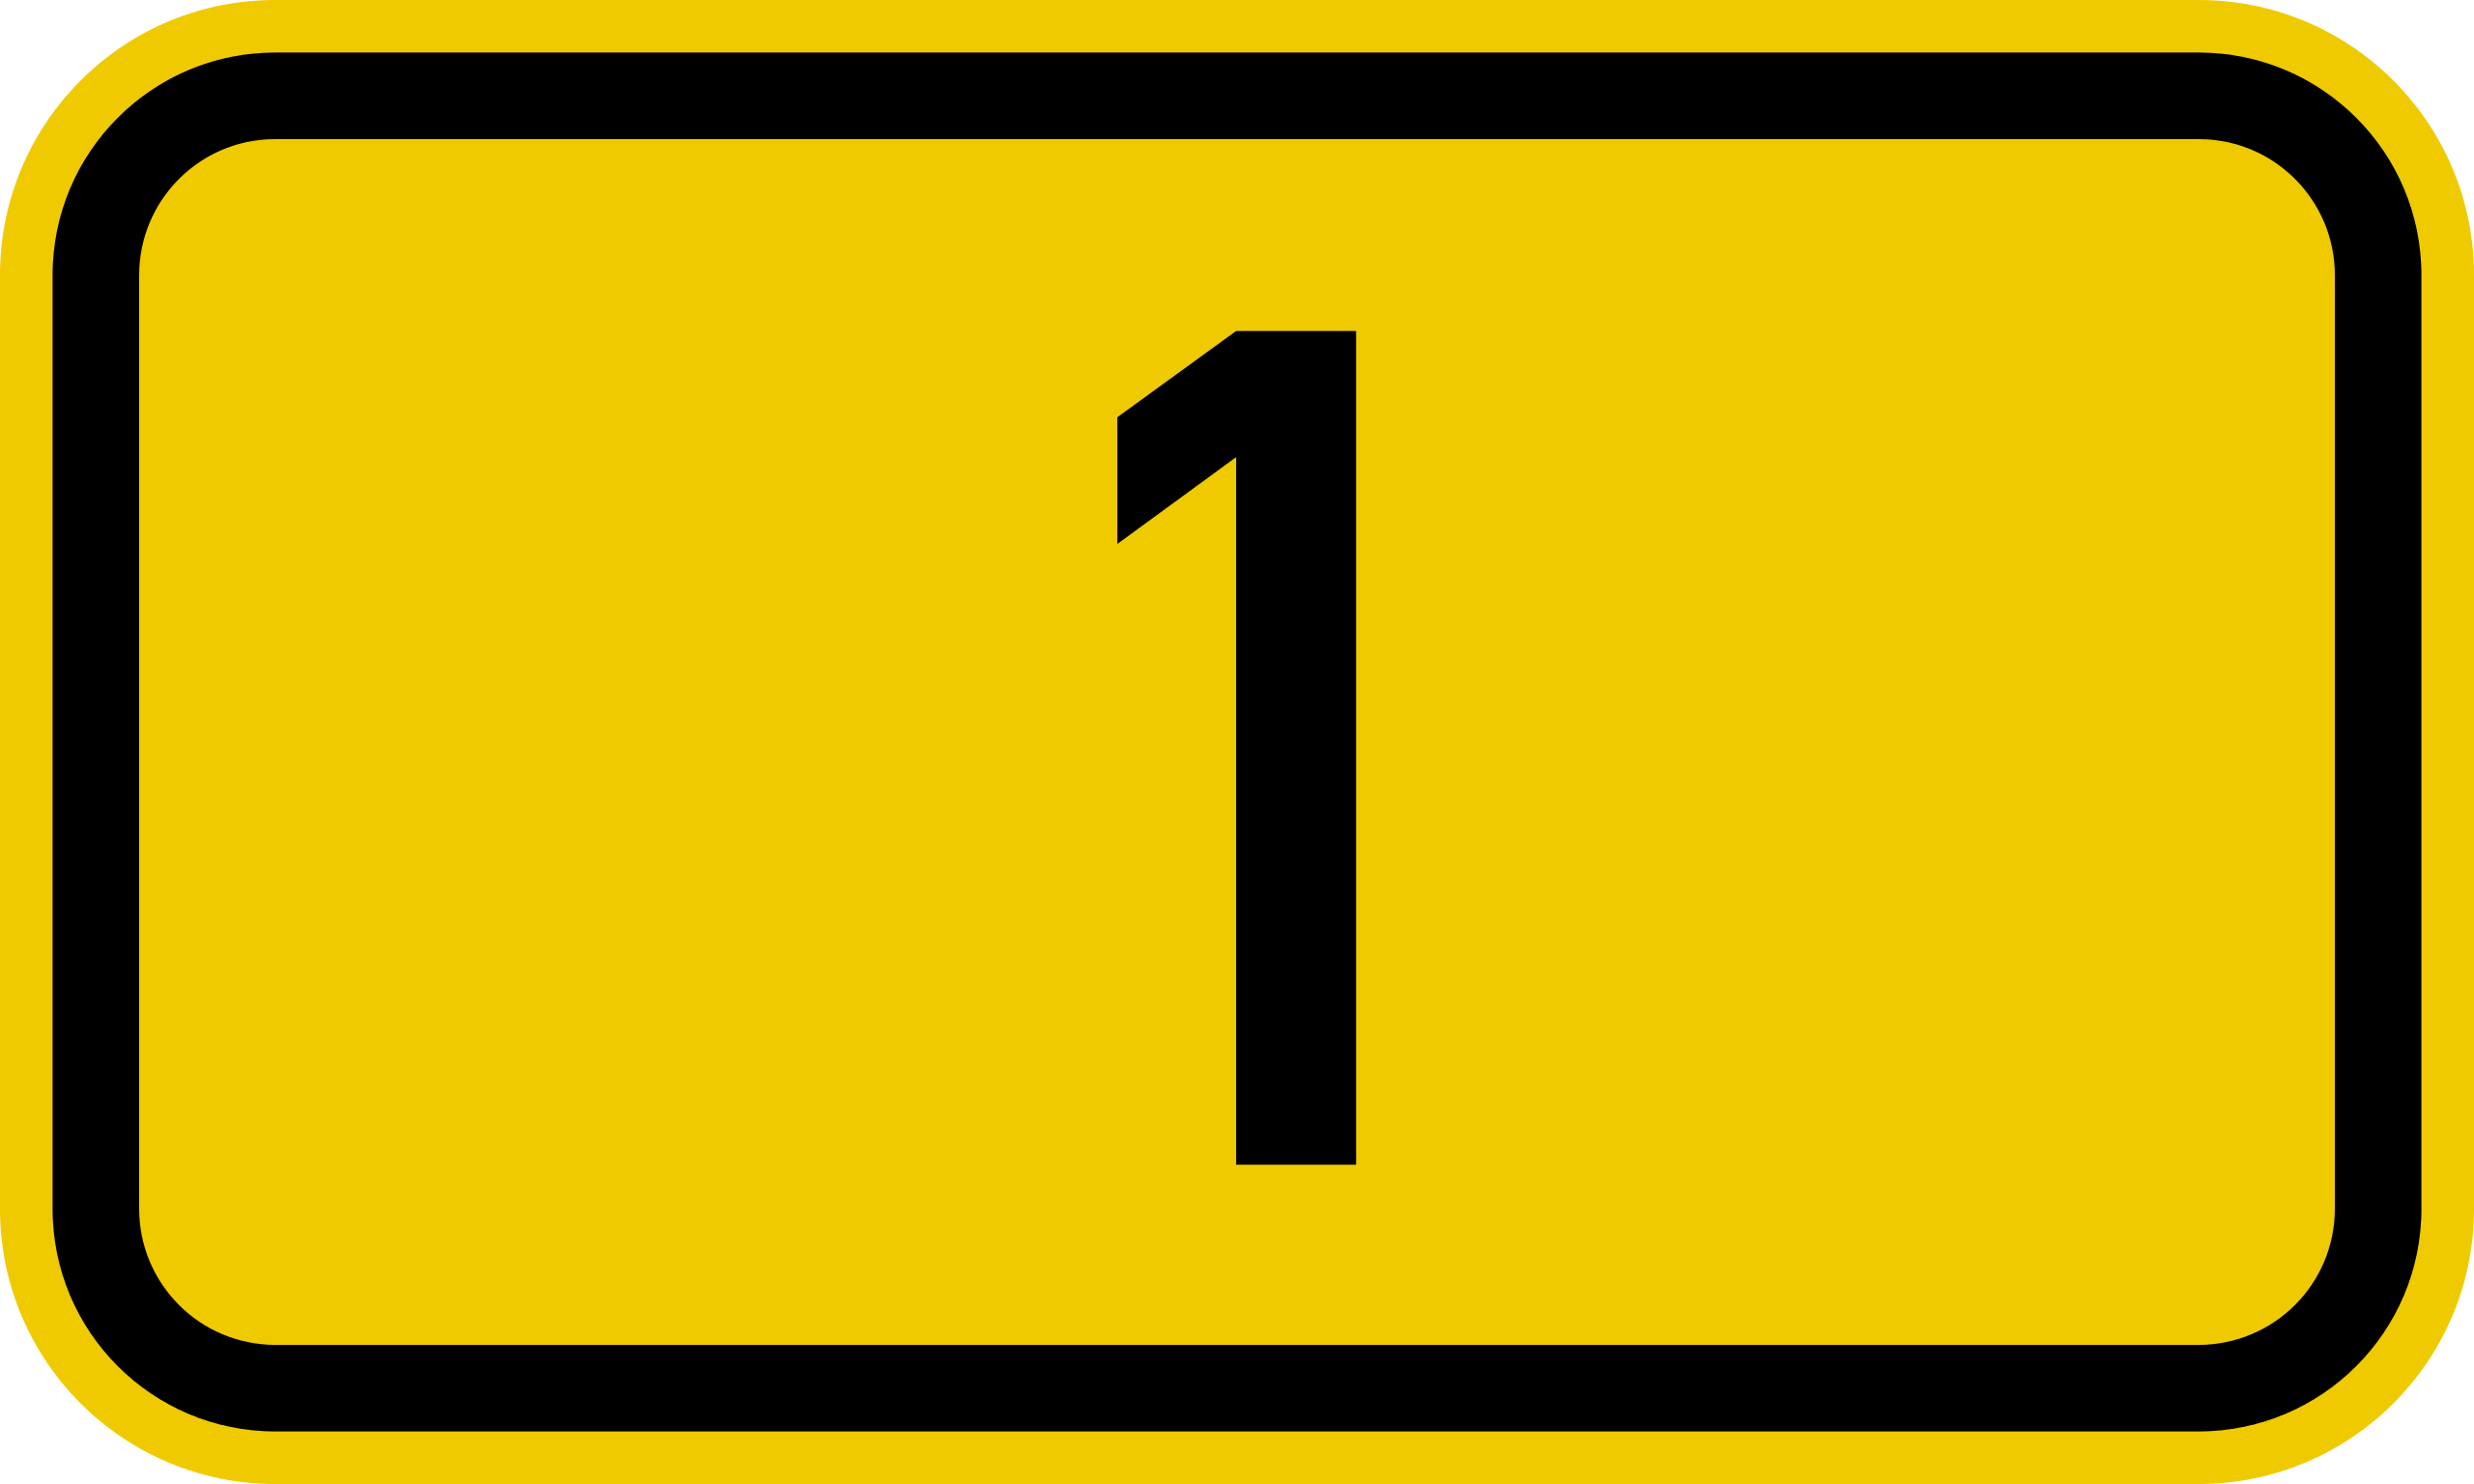 File:Bundesstraße 1 number.svg - Wikipedia